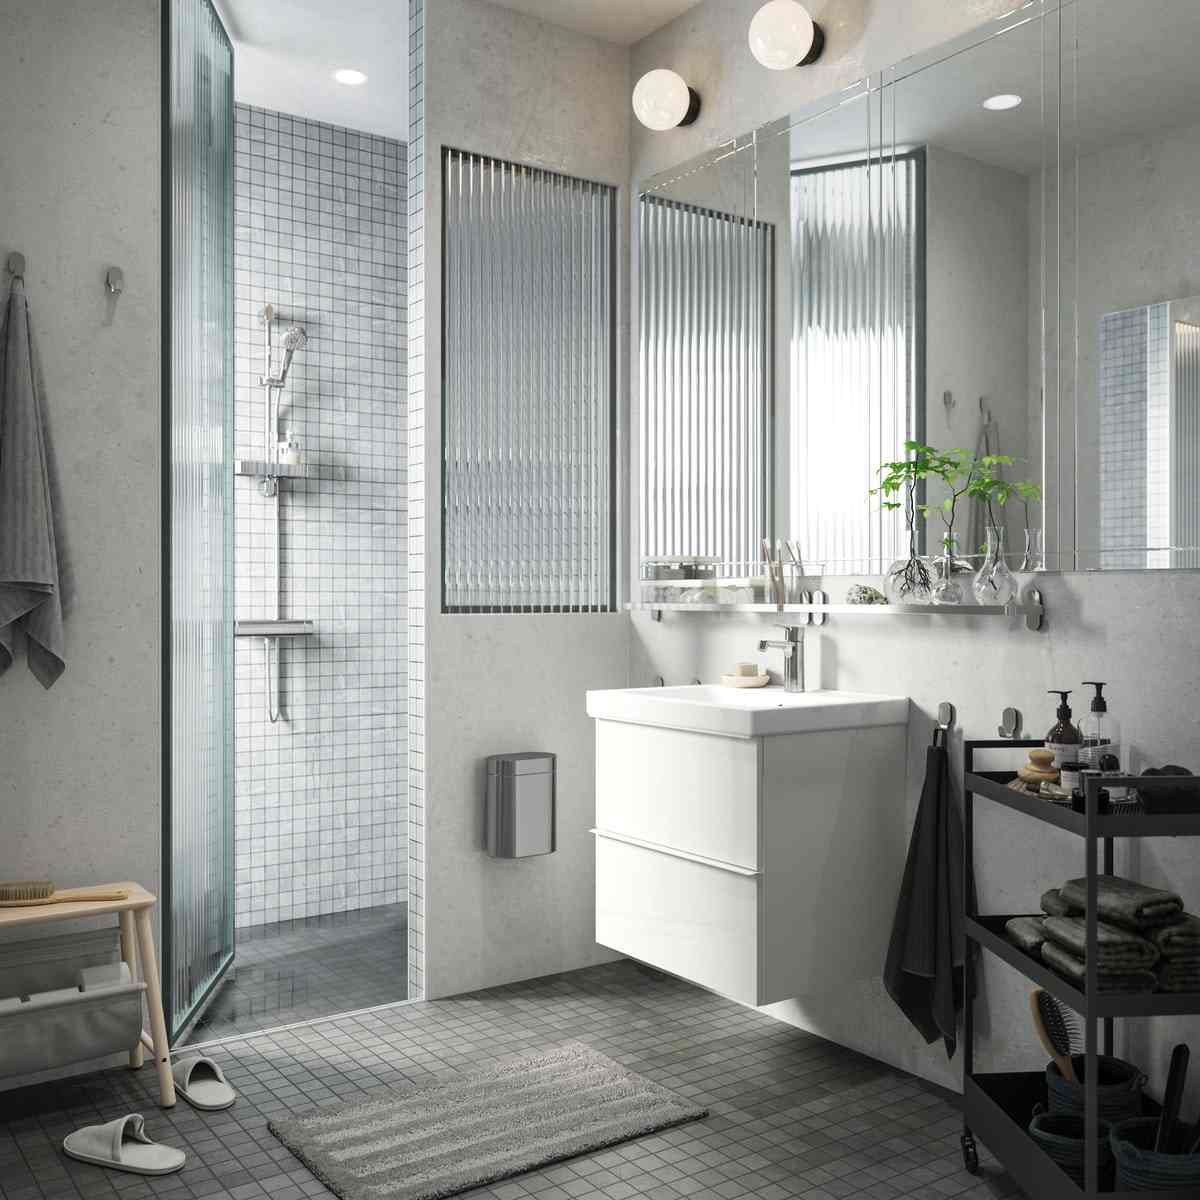 Ikea Bäder in Weiß praktische platzsparende Ideen für ein kleines Bad aus dem Katalog 2020